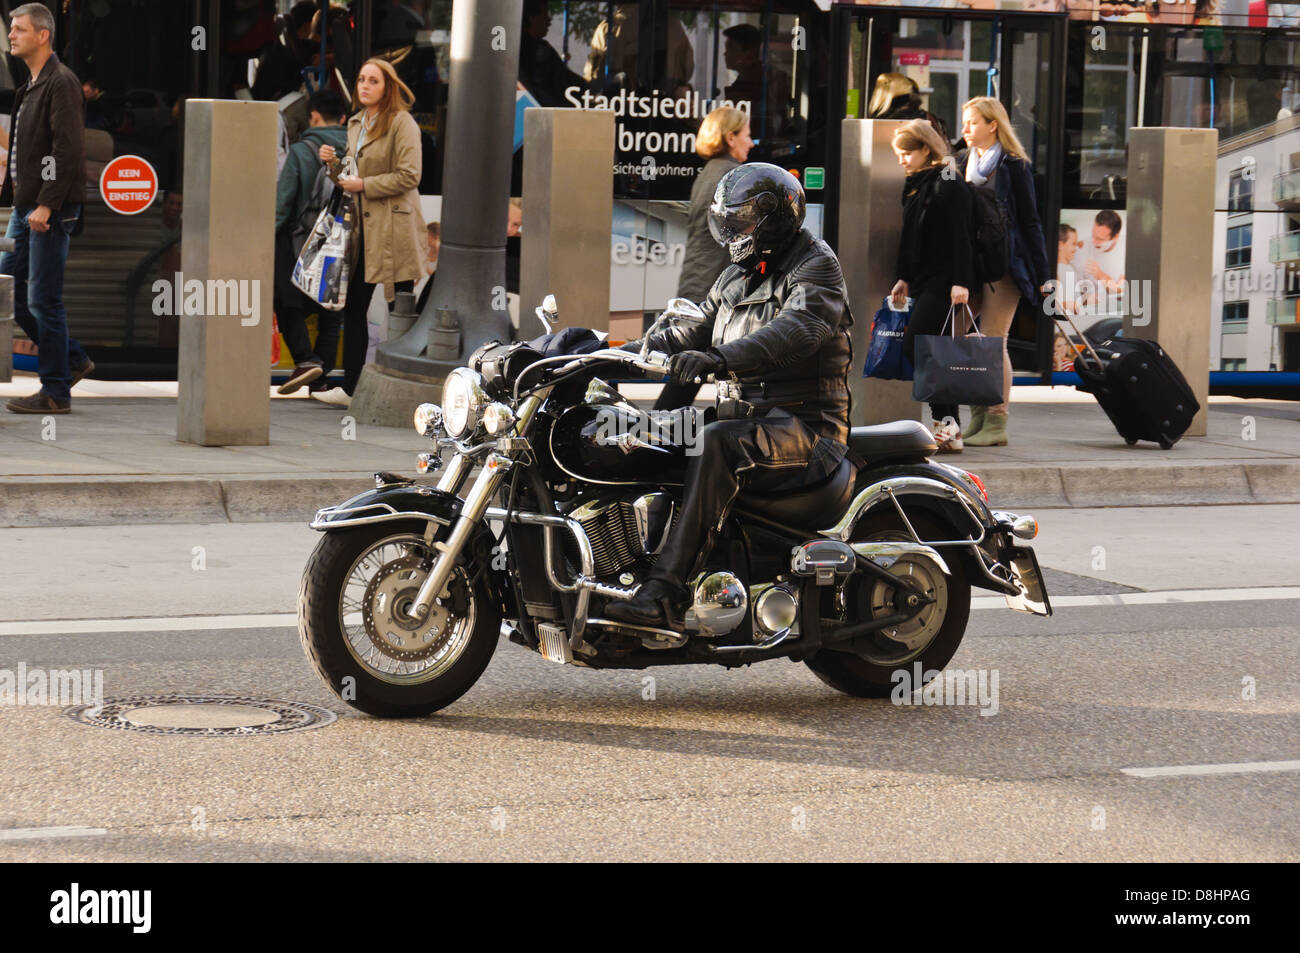 Biker in schwarz Motorradbekleidung und schwarzen Helm auf einem schweren  schwarzen Motorrad Kawasaki Vulcan – Heilbronn Deutschland Stockfotografie  - Alamy